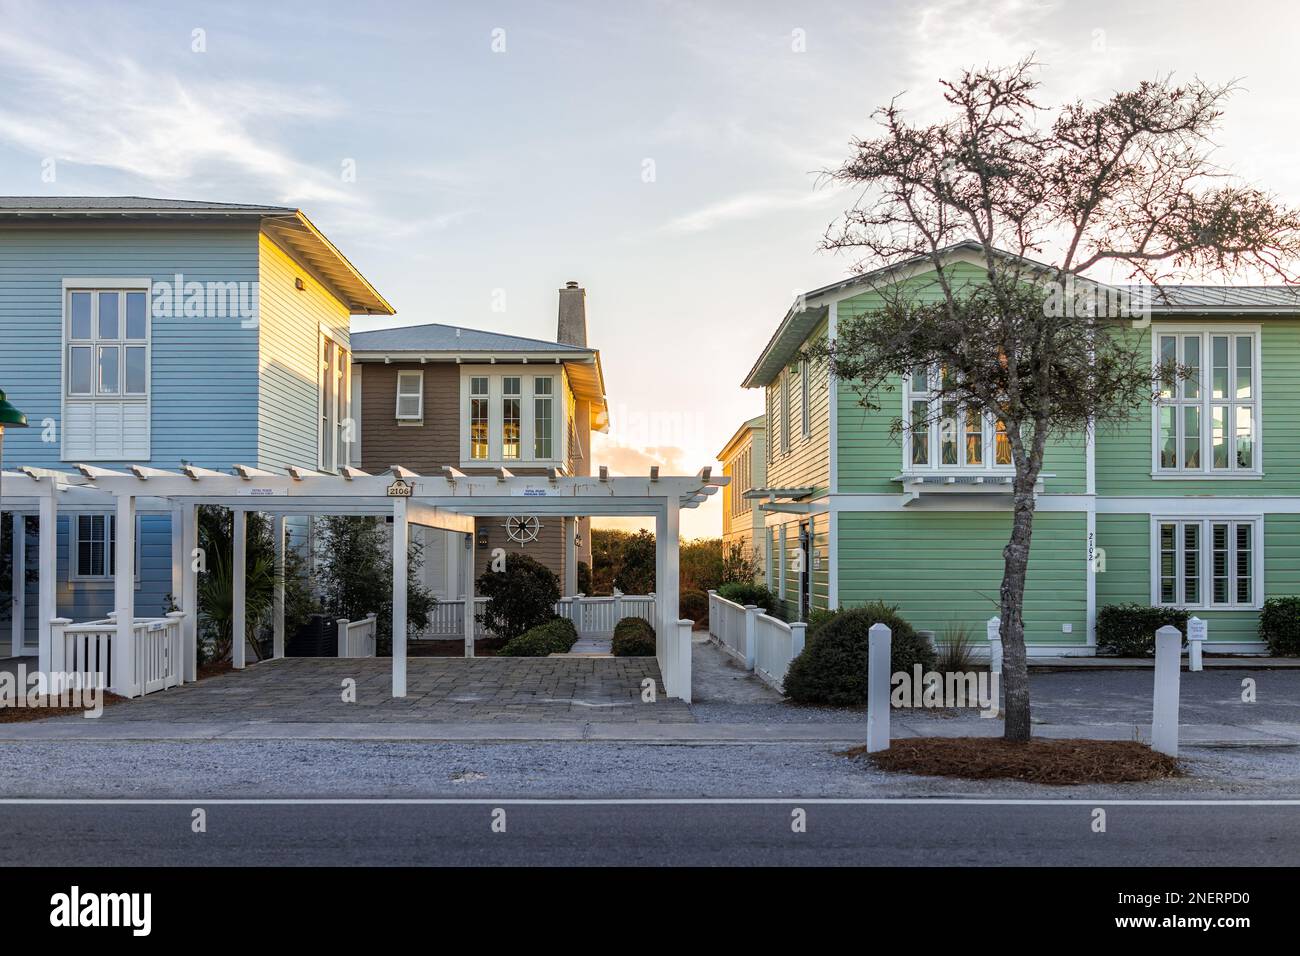 Seaside, EE.UU. - 14 de enero de 2021: Coloridos edificios de playa de madera multicolor en la ciudad de Florida en la costa del golfo de méxico al atardecer y nadie Foto de stock